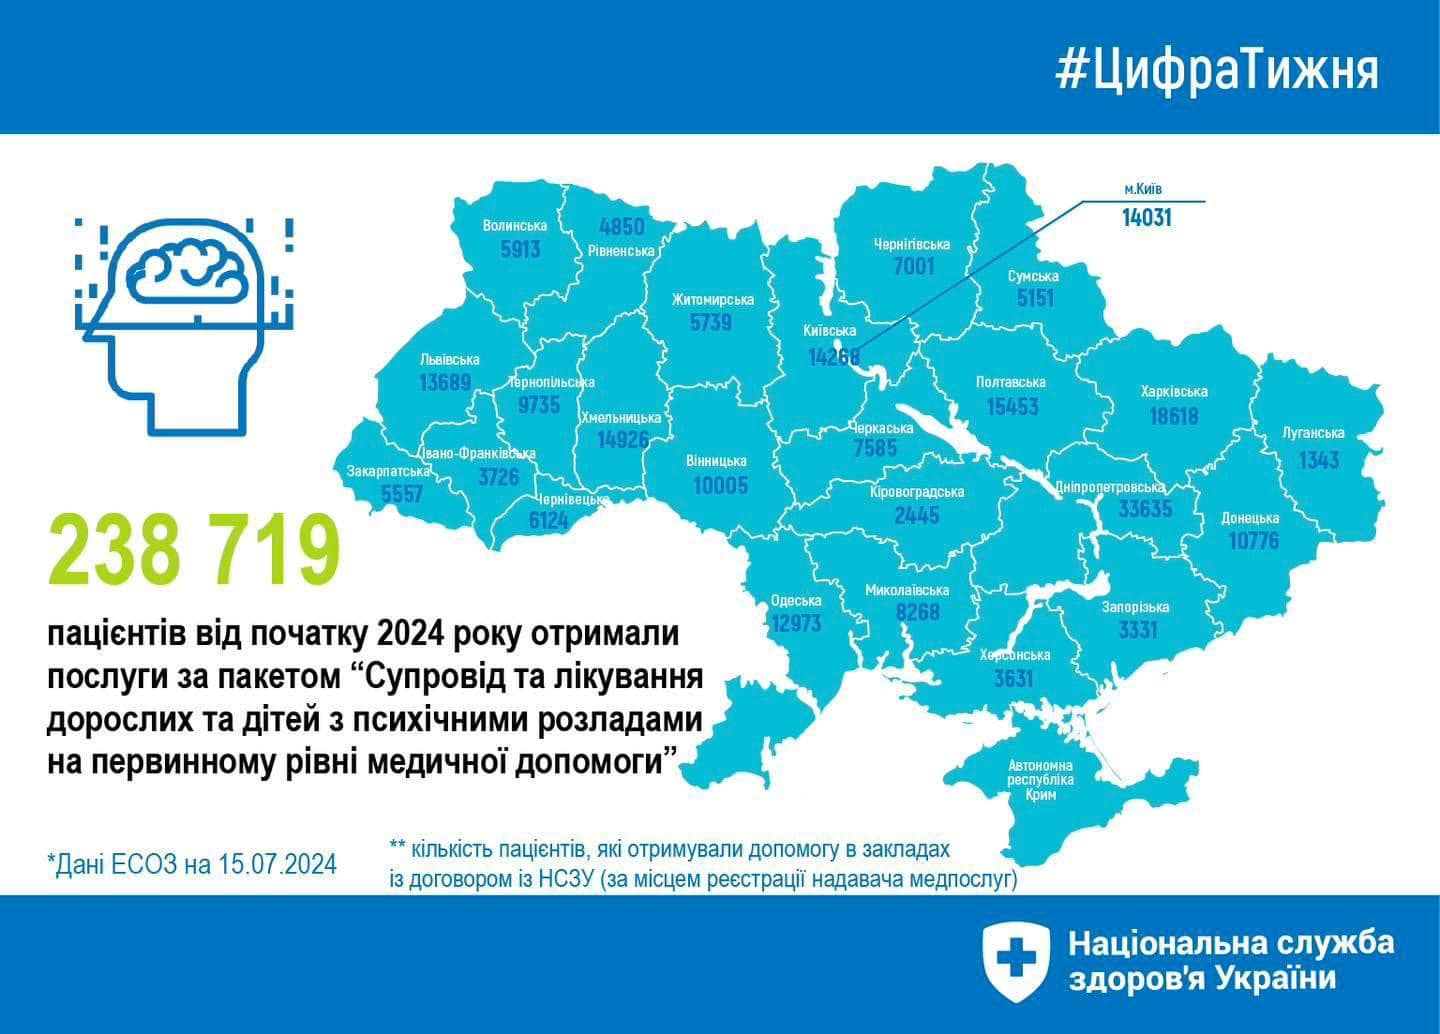 карта України з даними щодо отримання послуги "Супровід та лікування дорослих та дітей з психічними розладами на первинному рівні медичної допомоги"